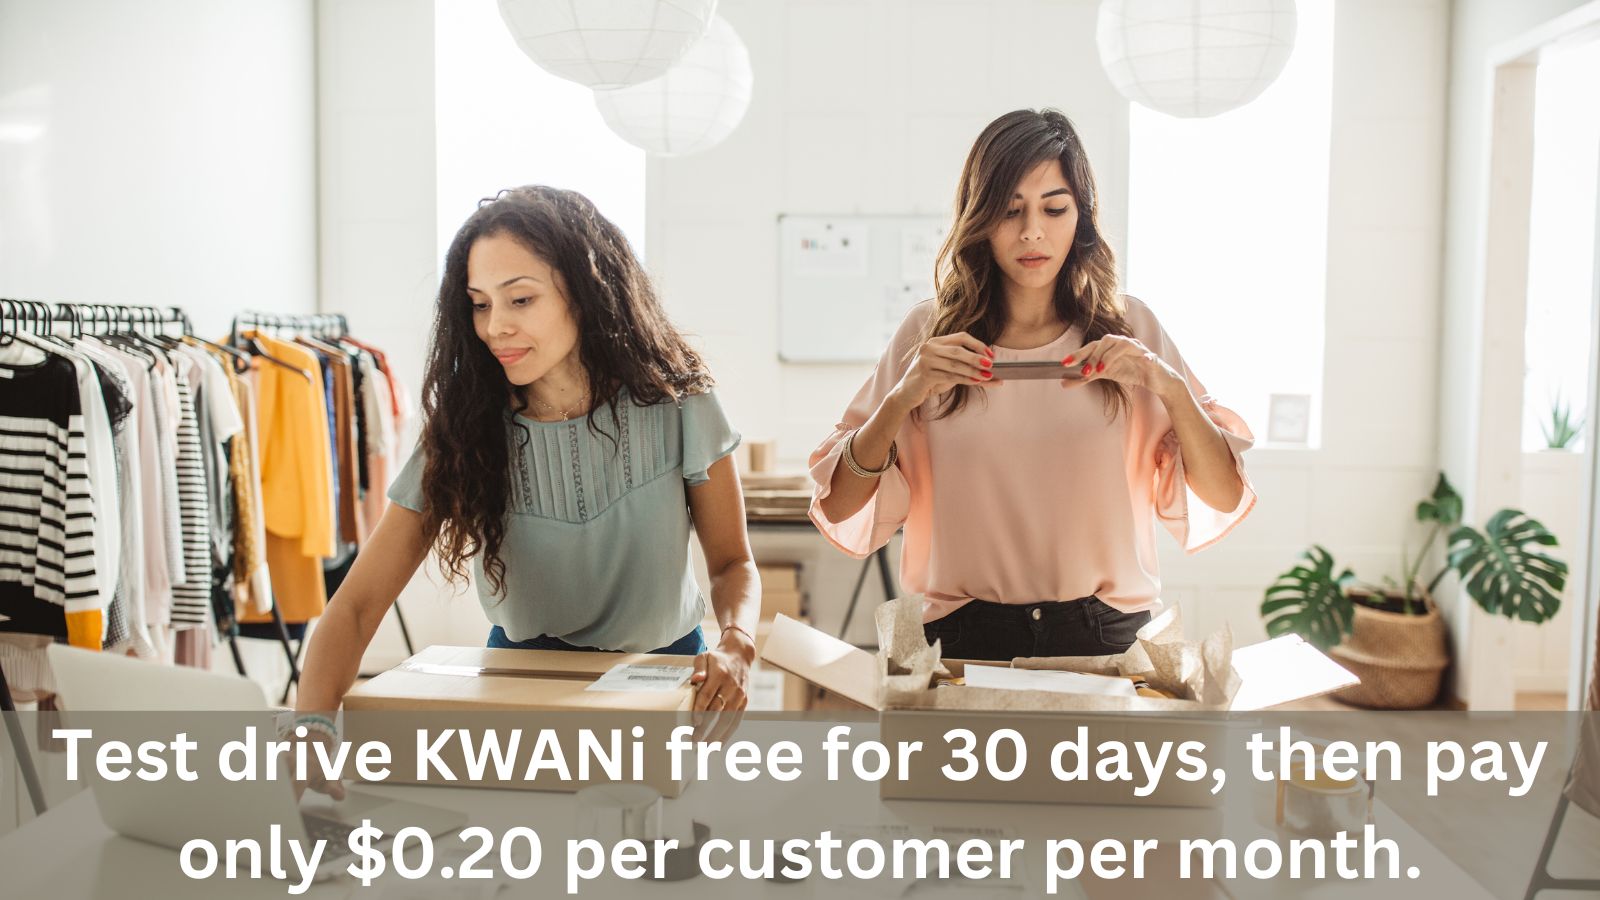 Testen Sie KWANi 30 Tage lang, dann zahlen Sie 0,20 € pro Kunde im Monat